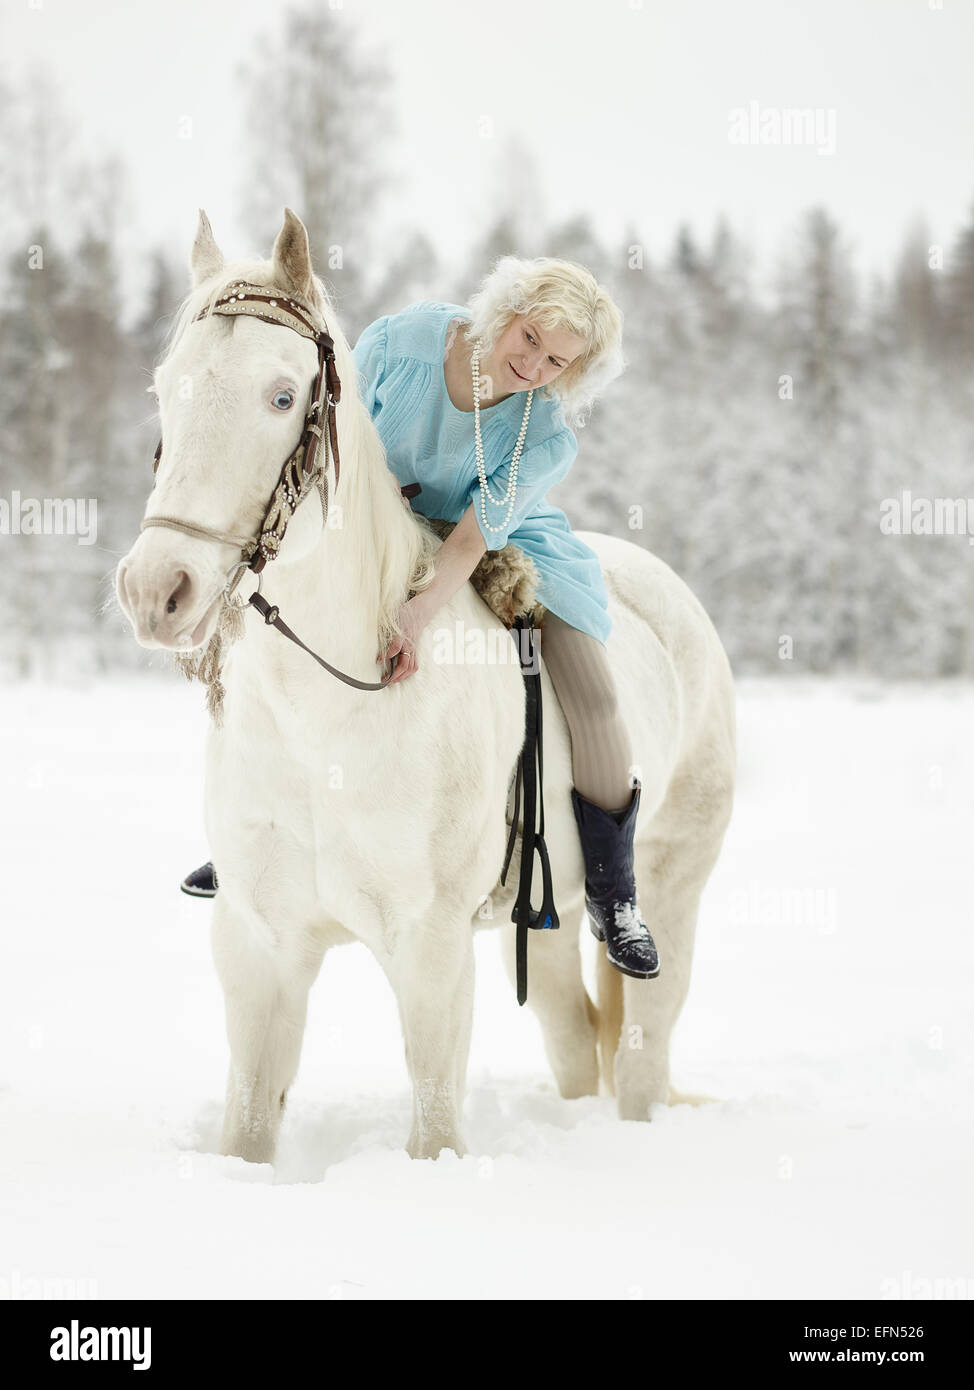 Attraktive Frau mit blauen Kleid und sie auf einem weißen Pferd Stockfoto